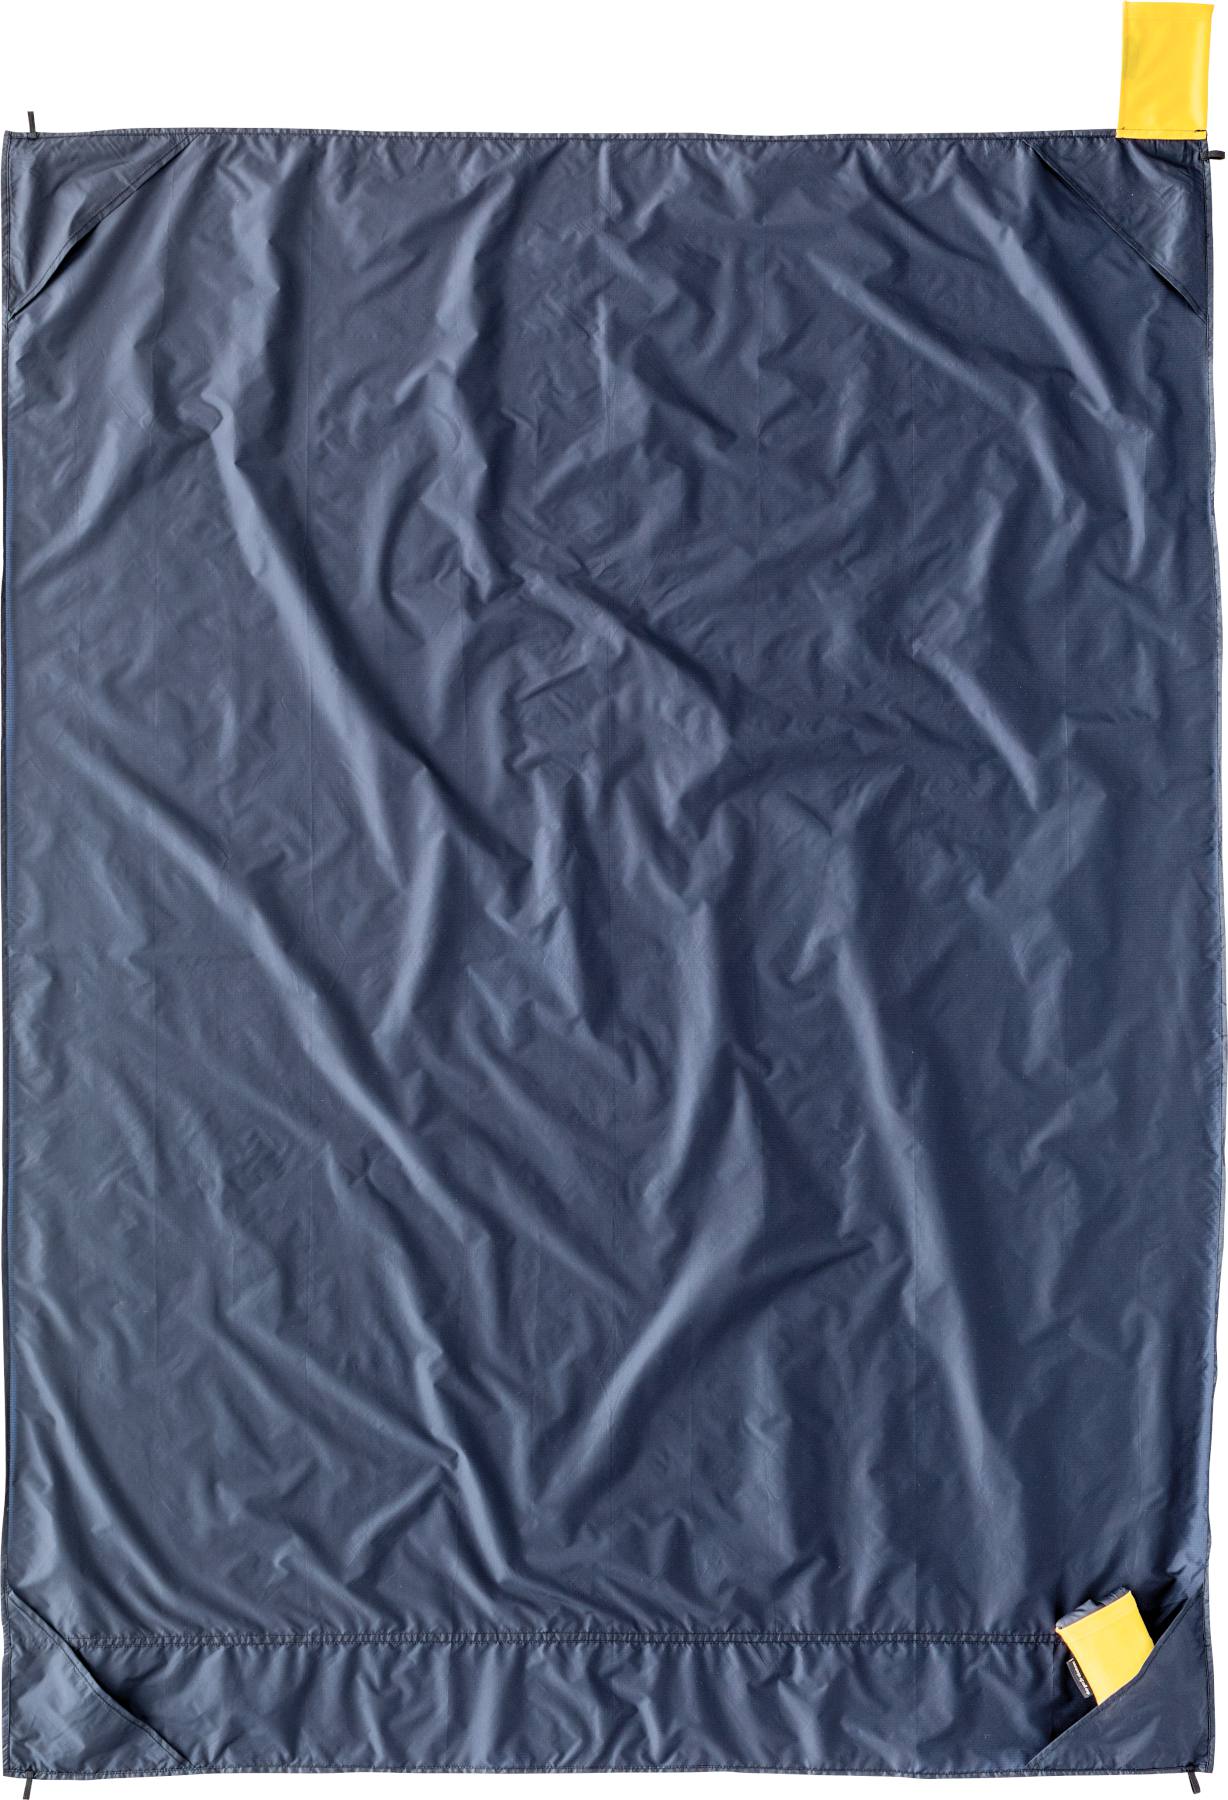 Cocoon Outdoor Blanket 8000mm 160 x 120 cm